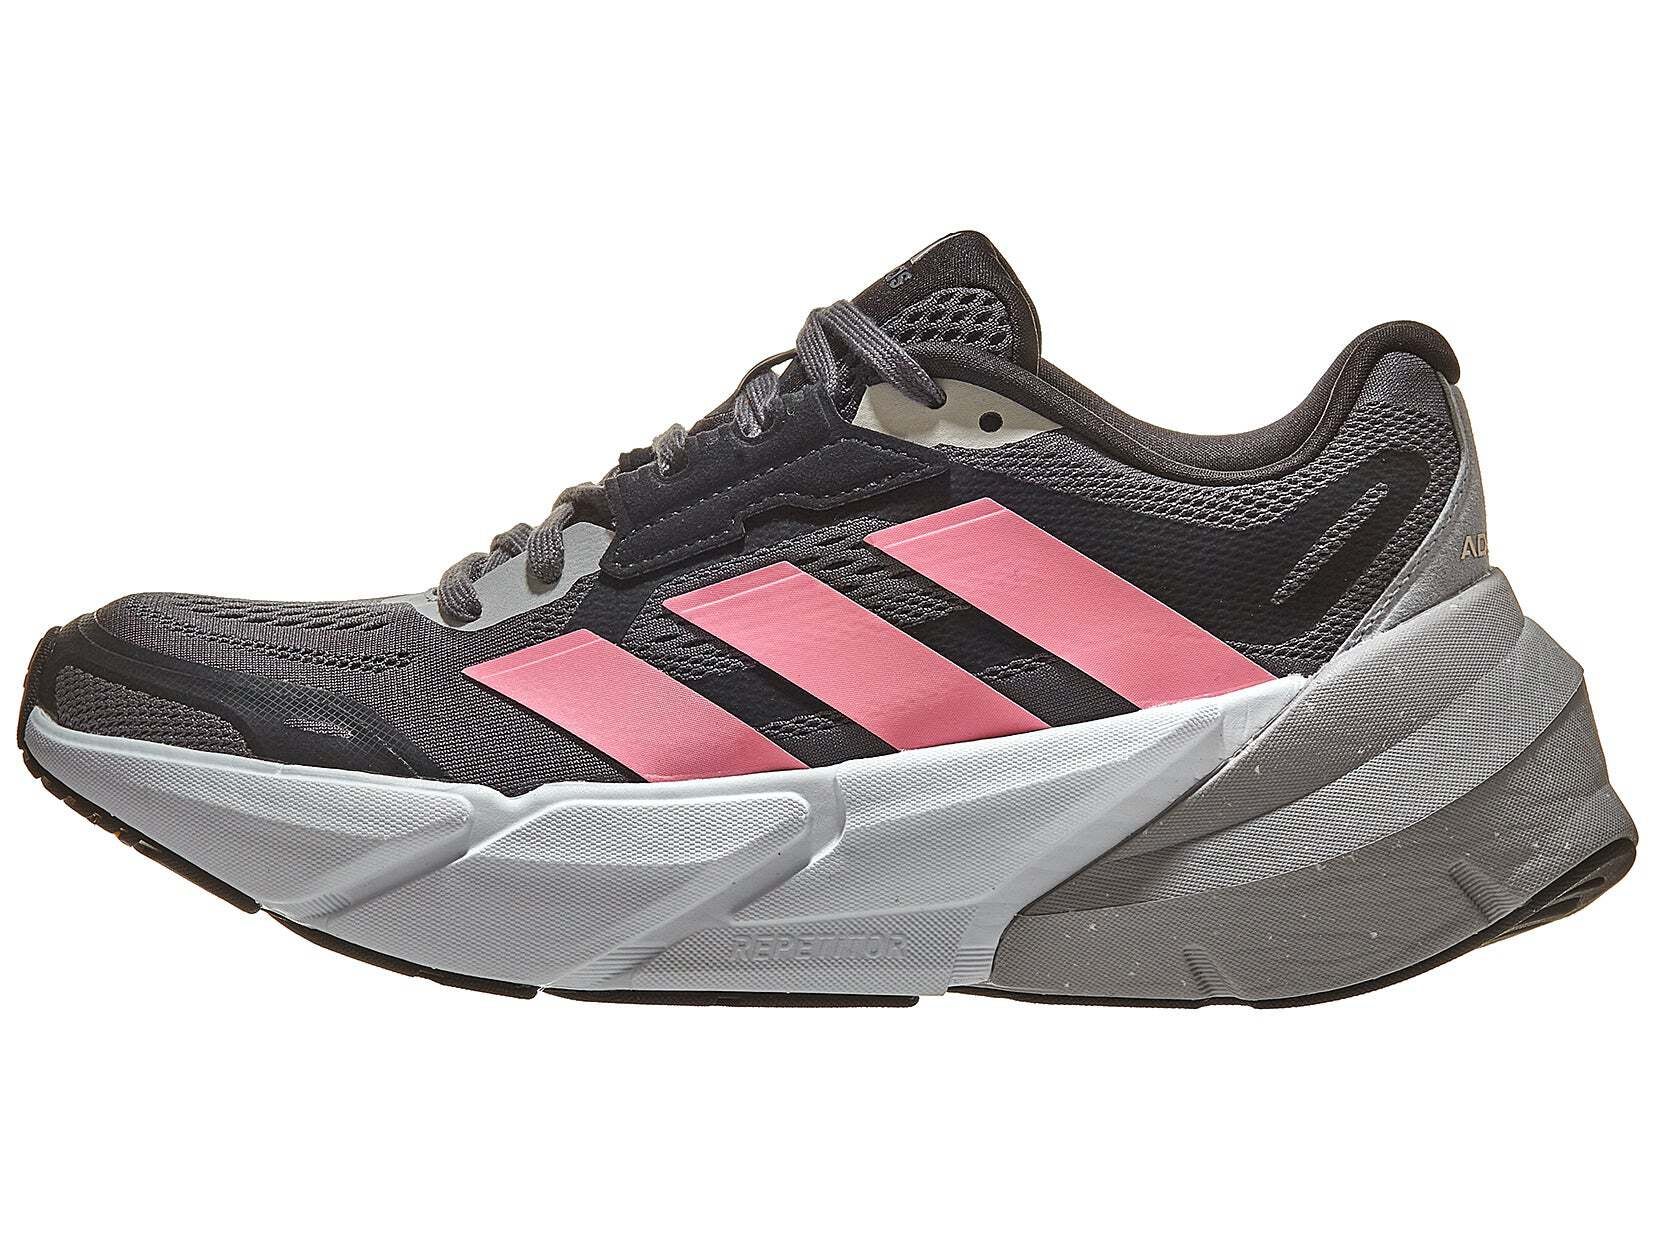 Precios de ADIDAS ADISTAR baratas ofertas comprar online y outlet zapatillas running en RunningWarehouse